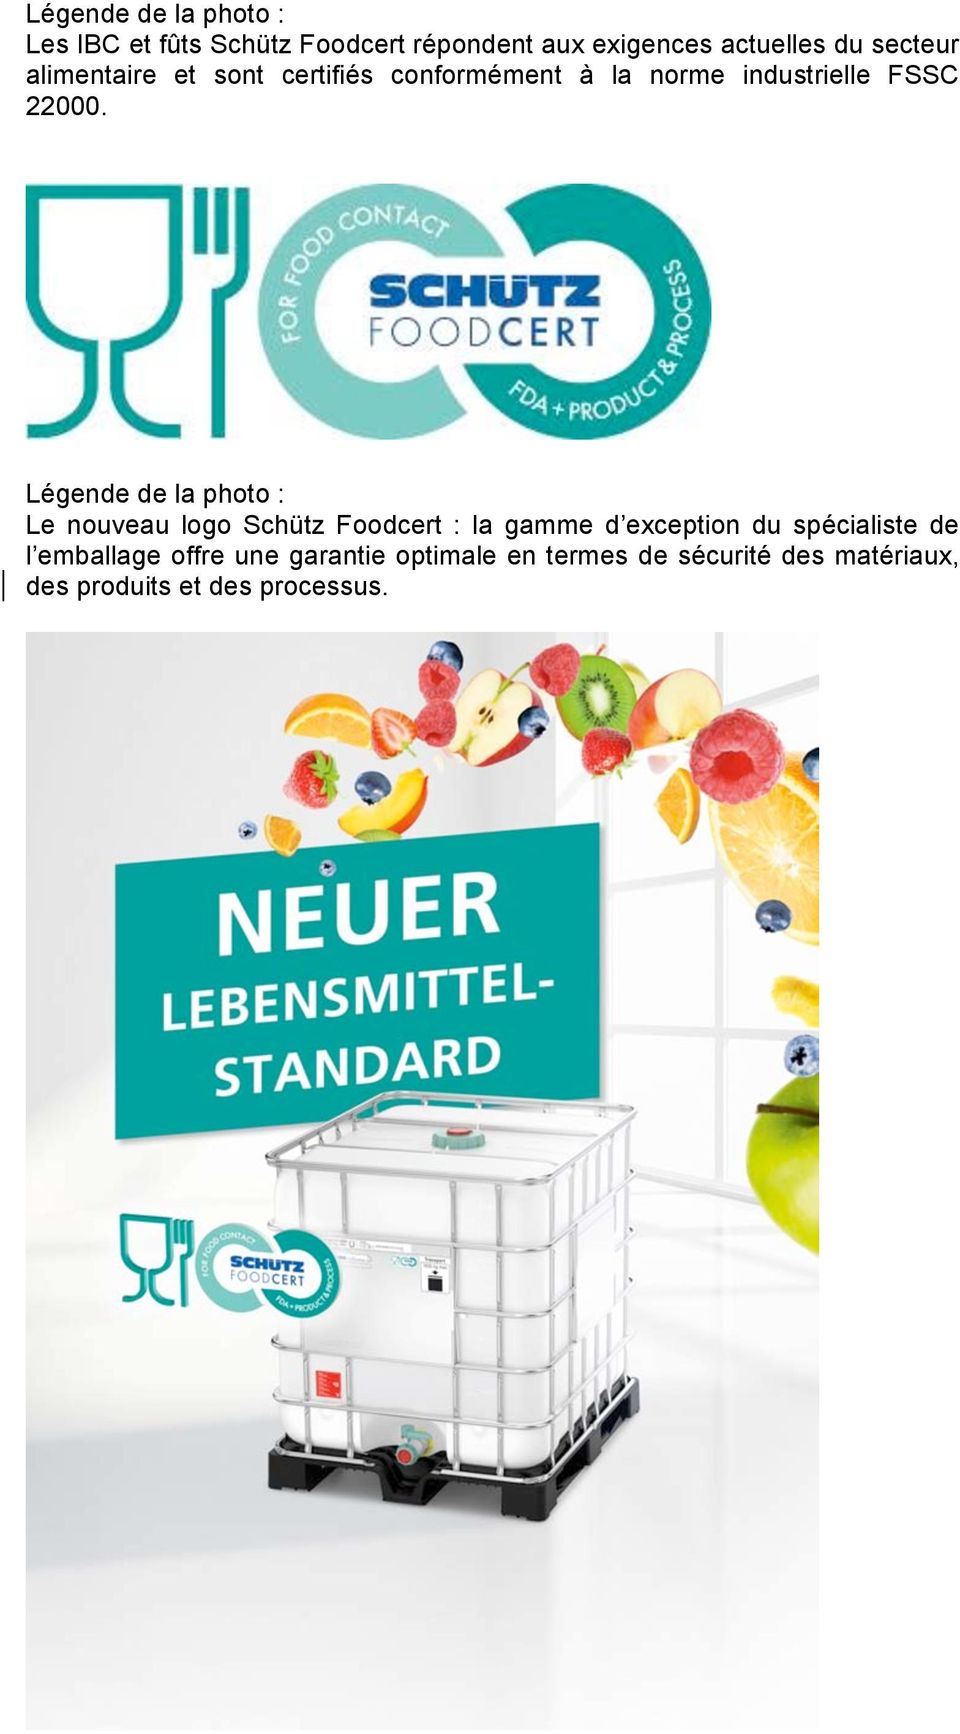 Légende de la photo : Le nouveau logo Schütz Foodcert : la gamme d exception du spécialiste de